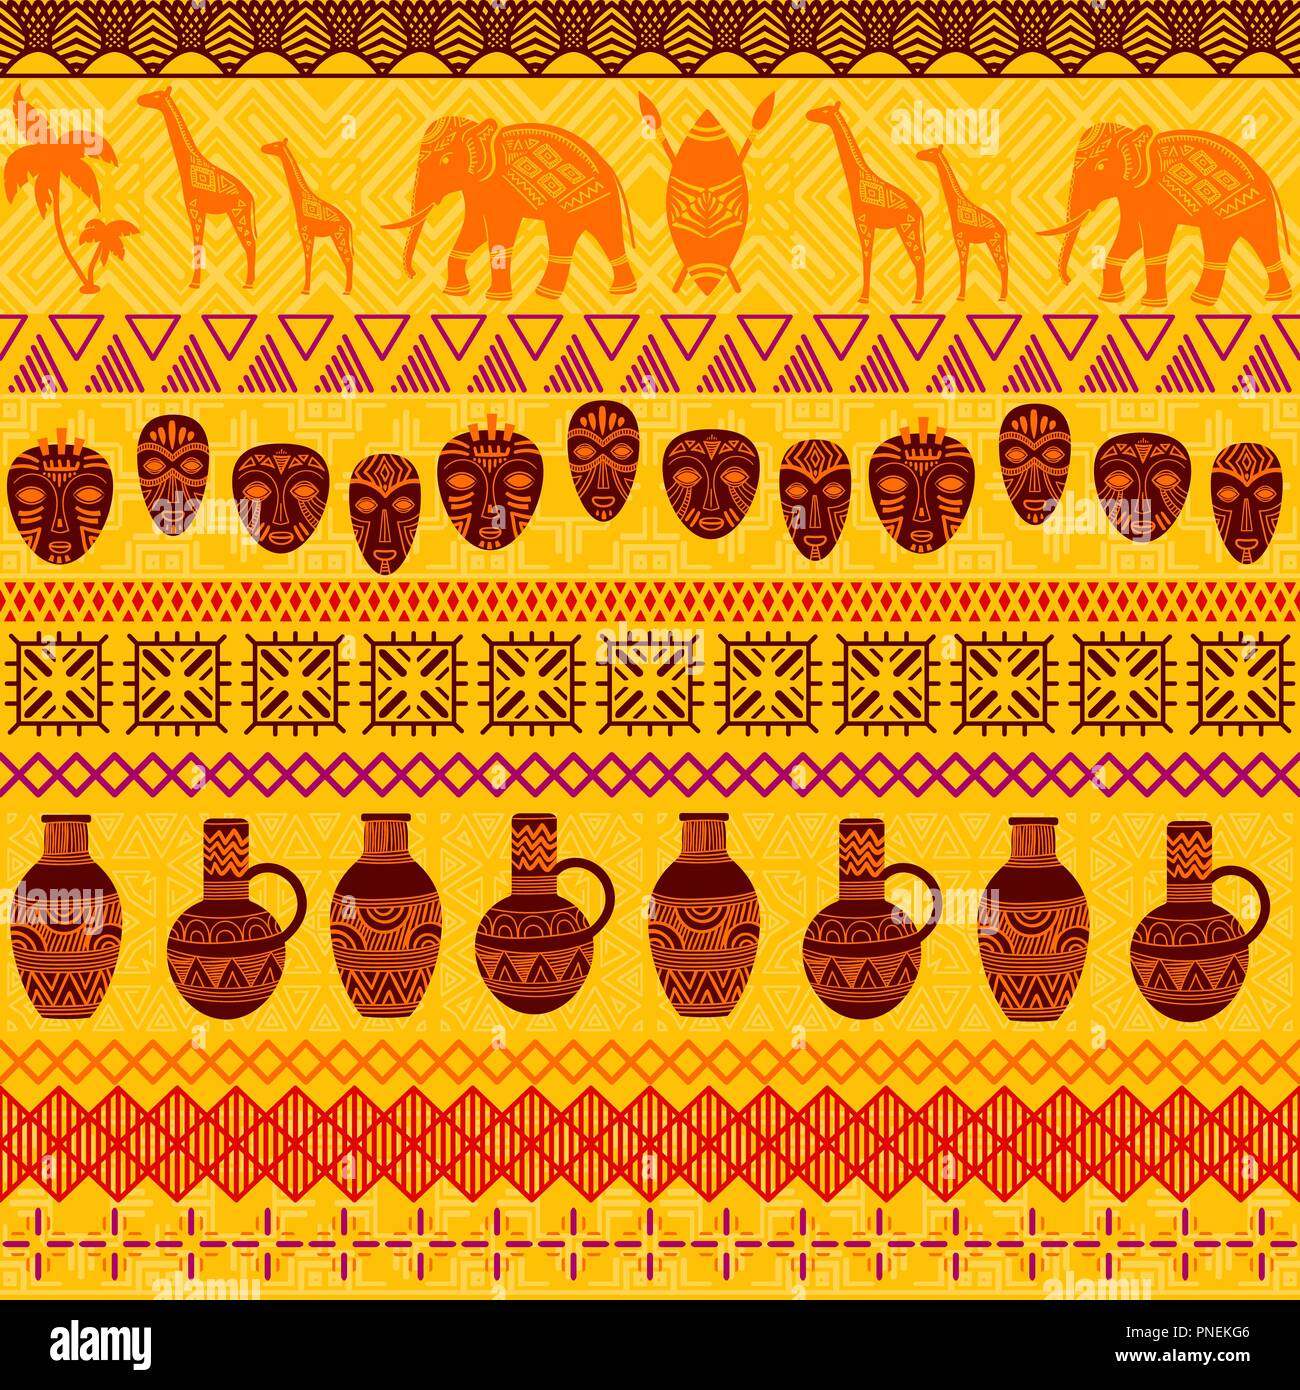 Ethnique Tribal modèle homogène. Ornement géométrique abstraite avec des motifs africains. Vector illustration. Parfait pour l'impression textile, papier peint, tissu design, tissu, papier d'emballage et en dessins de tissu. Illustration de Vecteur